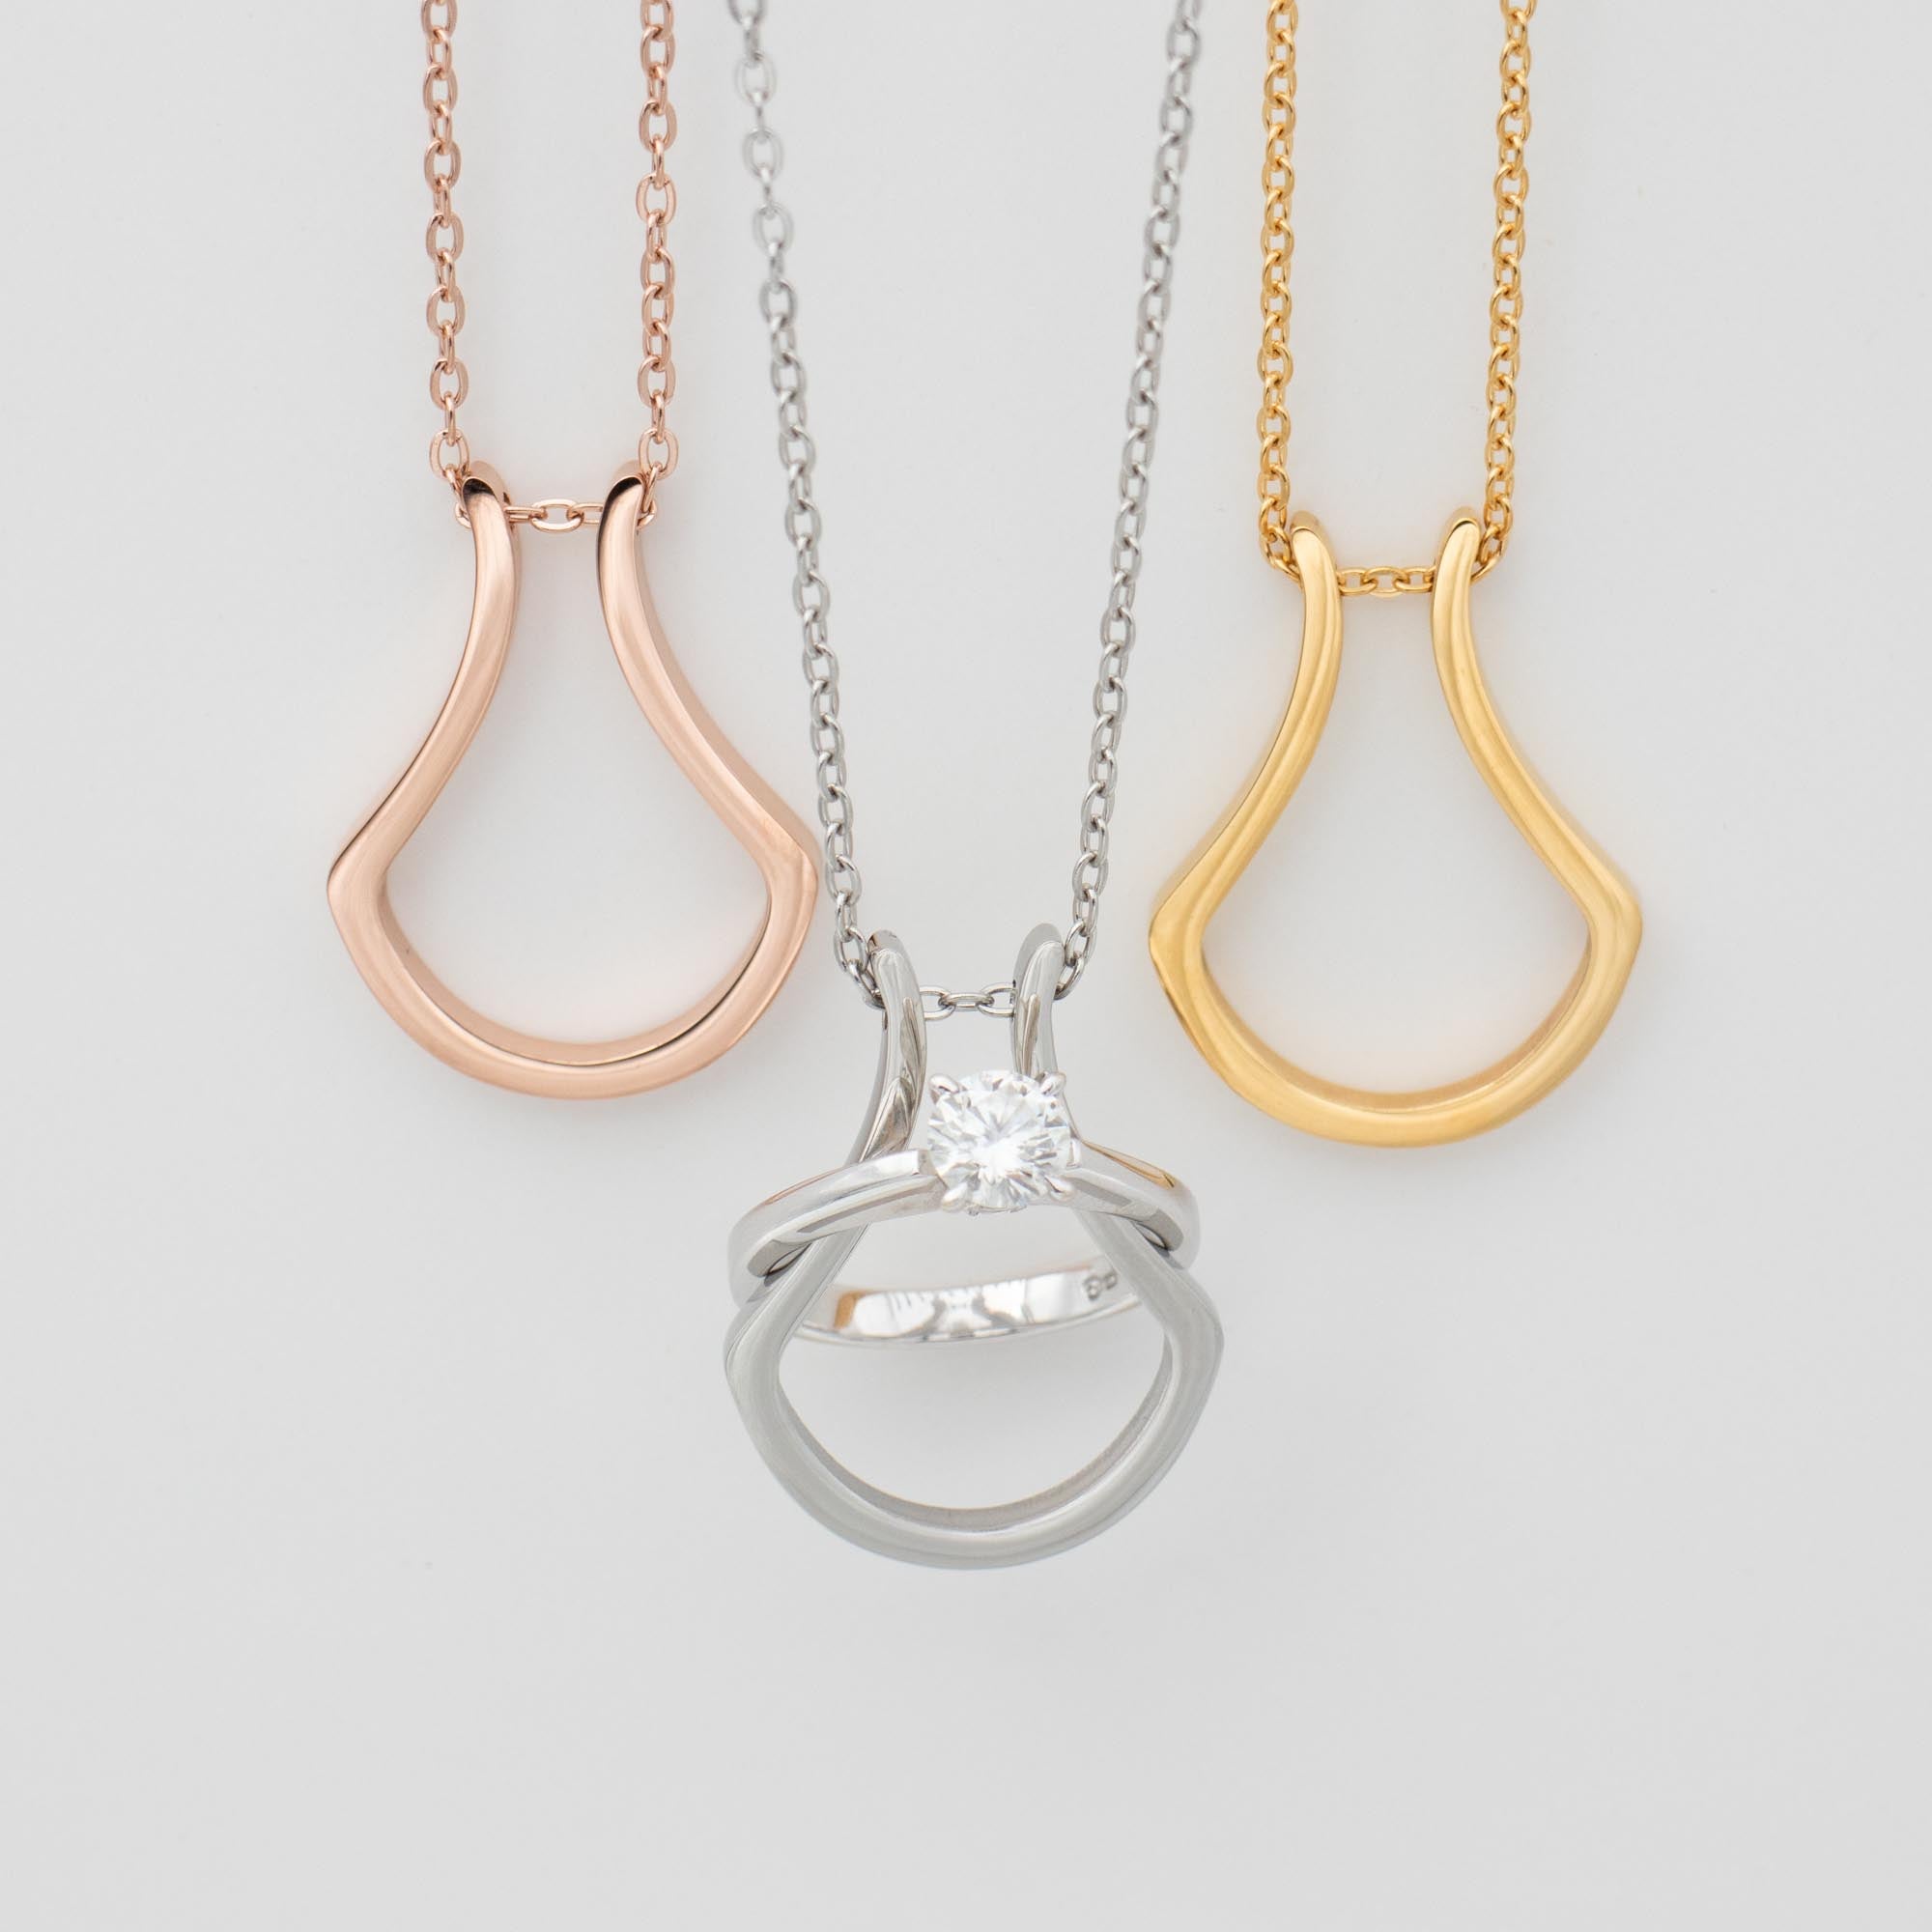 Ring keeper necklace | ItsVera.com